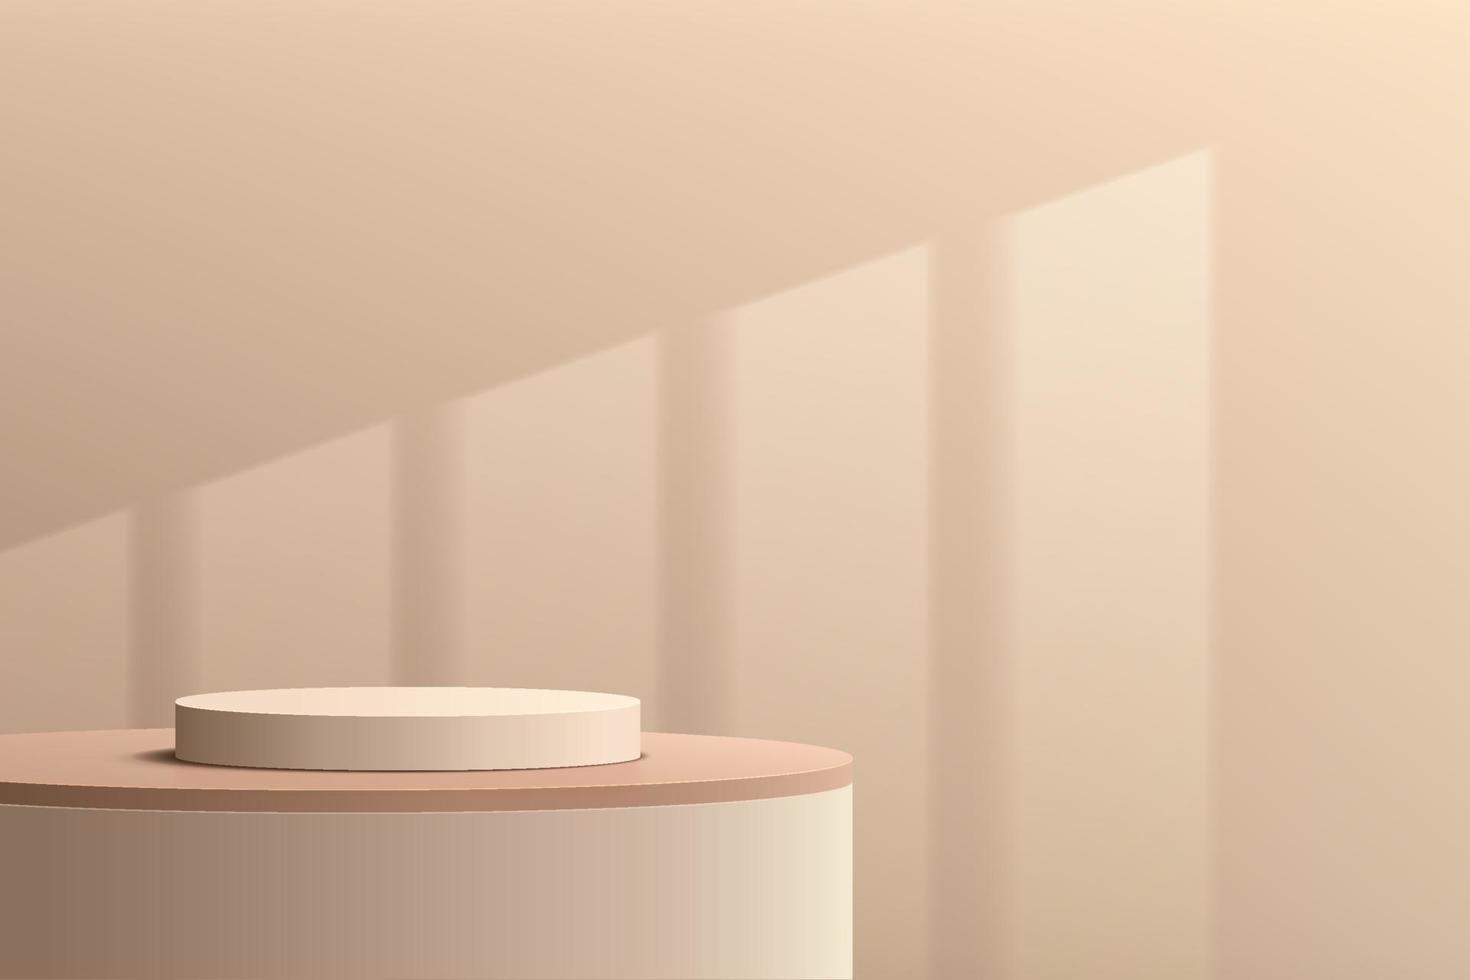 podio de pedestal de cilindro beige 3d abstracto con escena de pared marrón crema e iluminación de ventana. plataforma de representación geométrica moderna diseño mínimo para la presentación de productos cosméticos. eps10 vectoriales vector